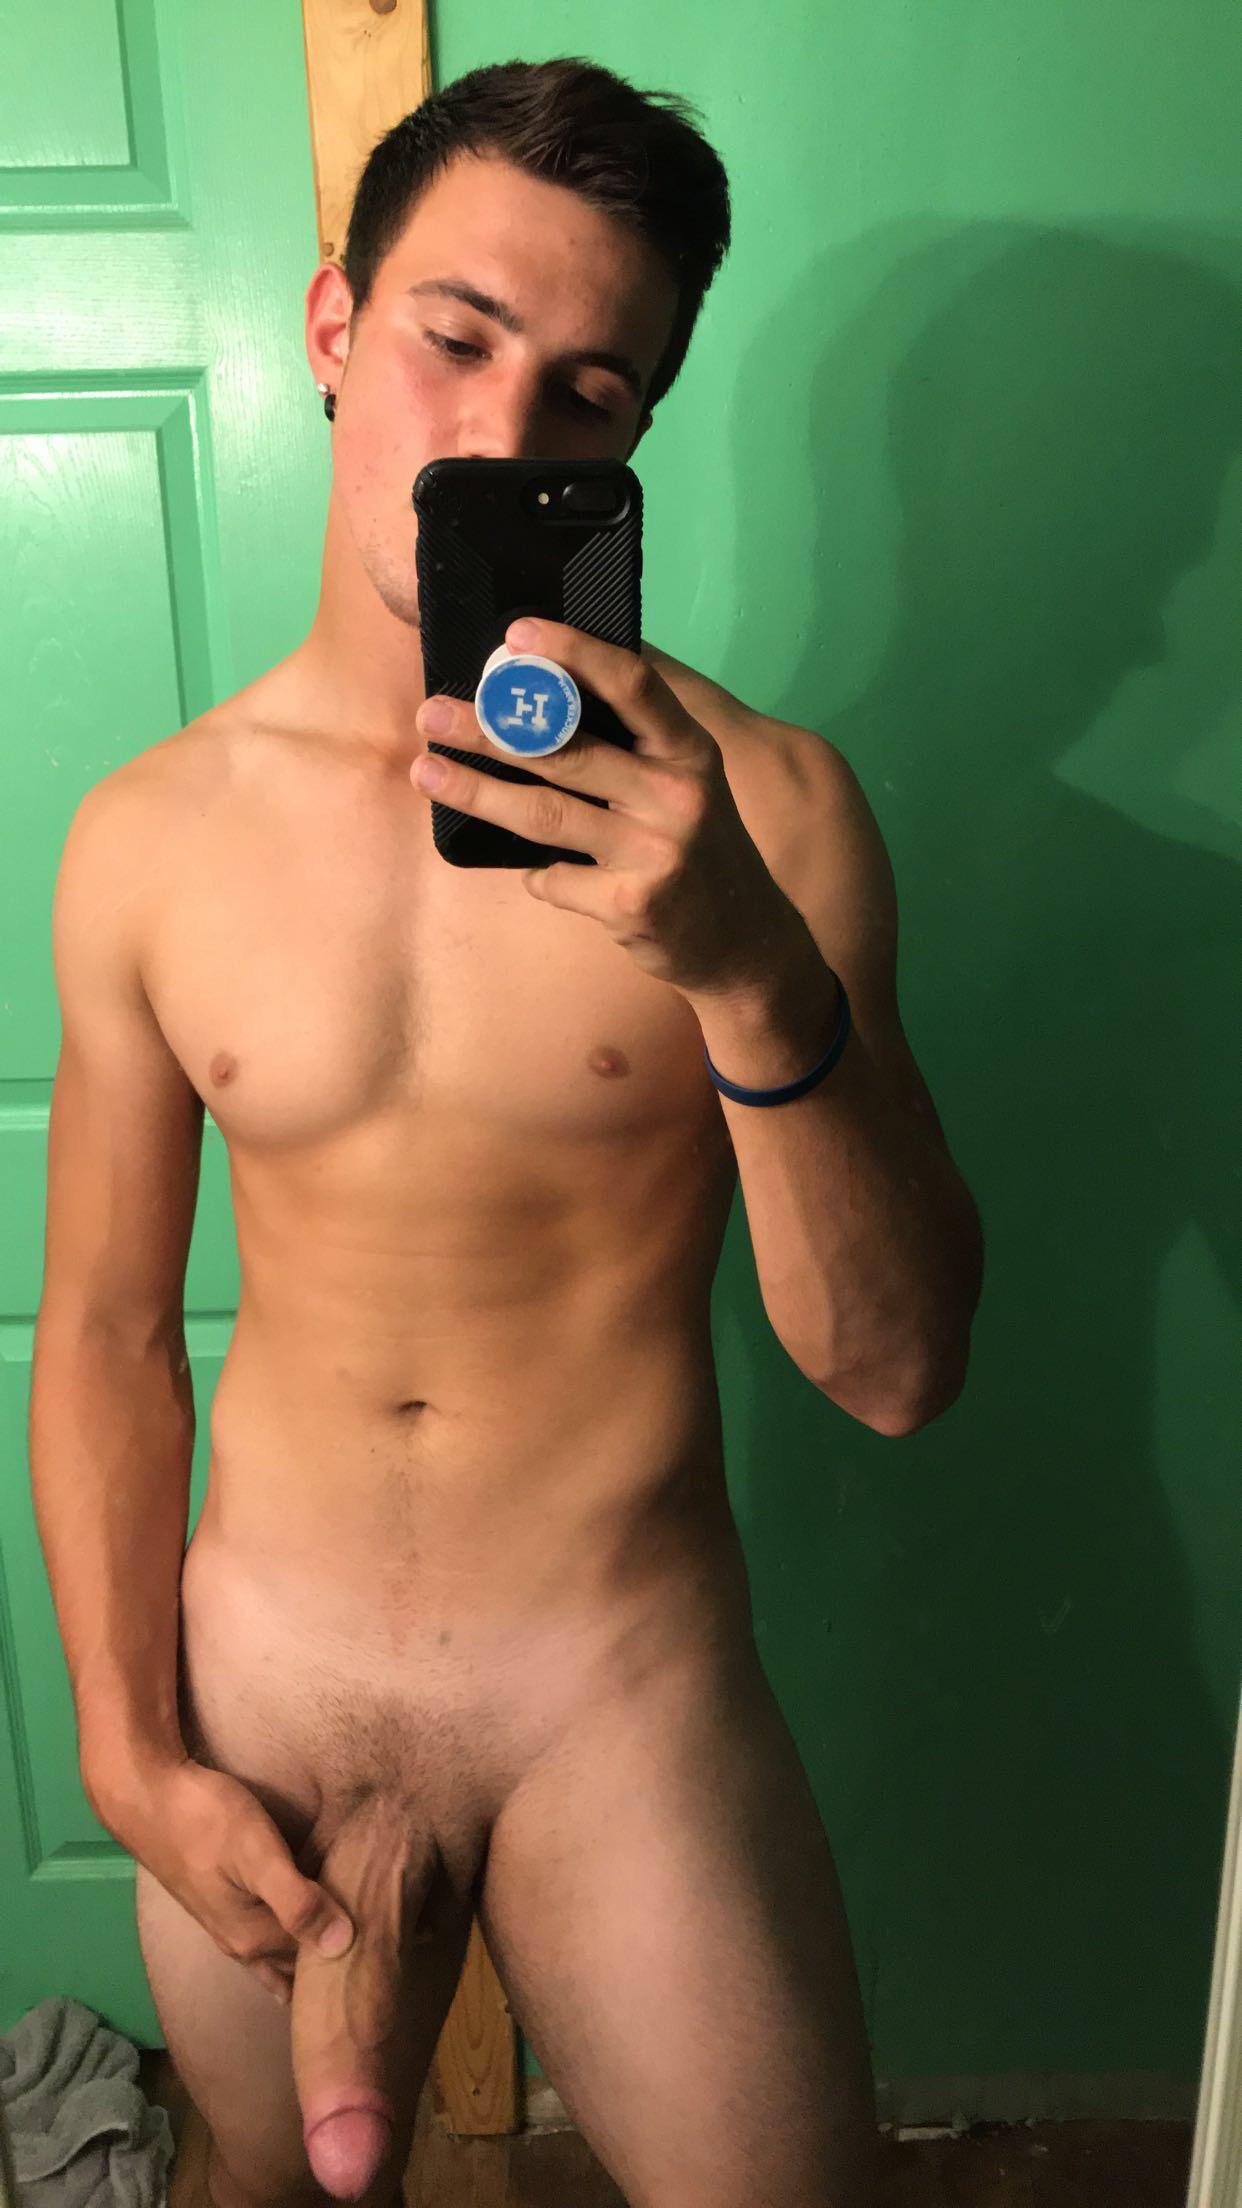 boner straight guy naked selfie free pics